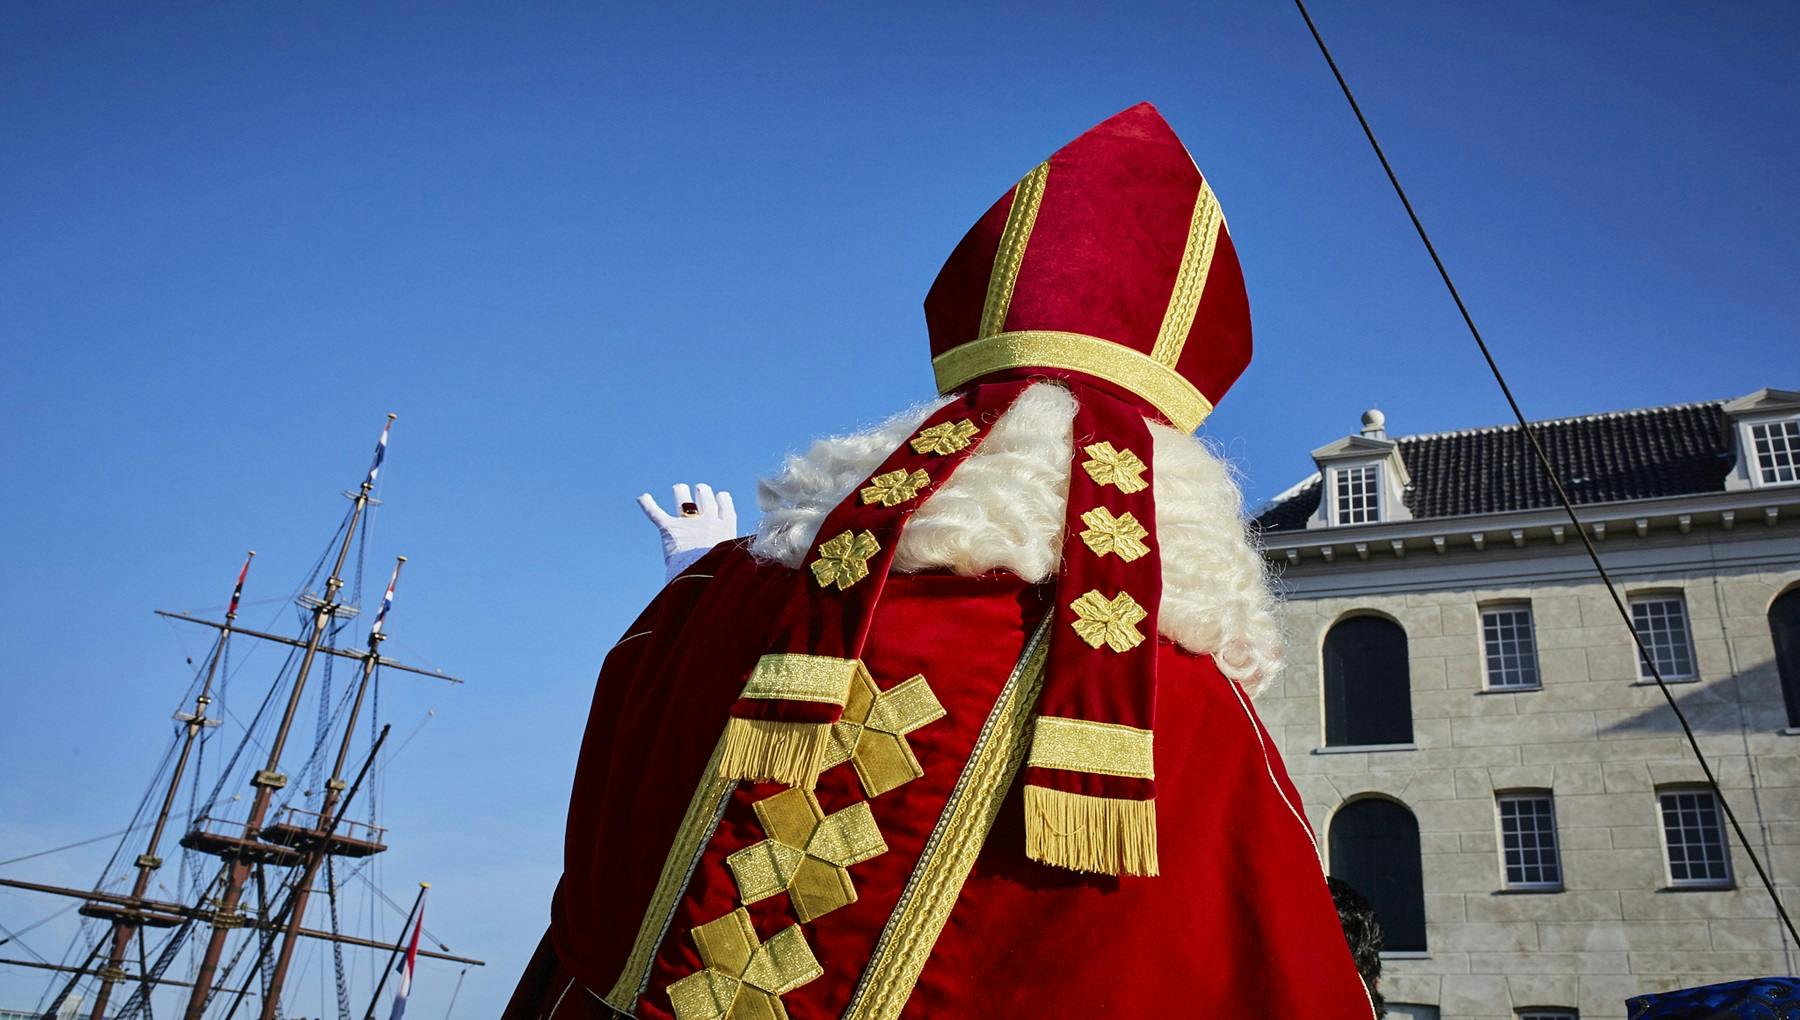 Arrival of Sinterklaas